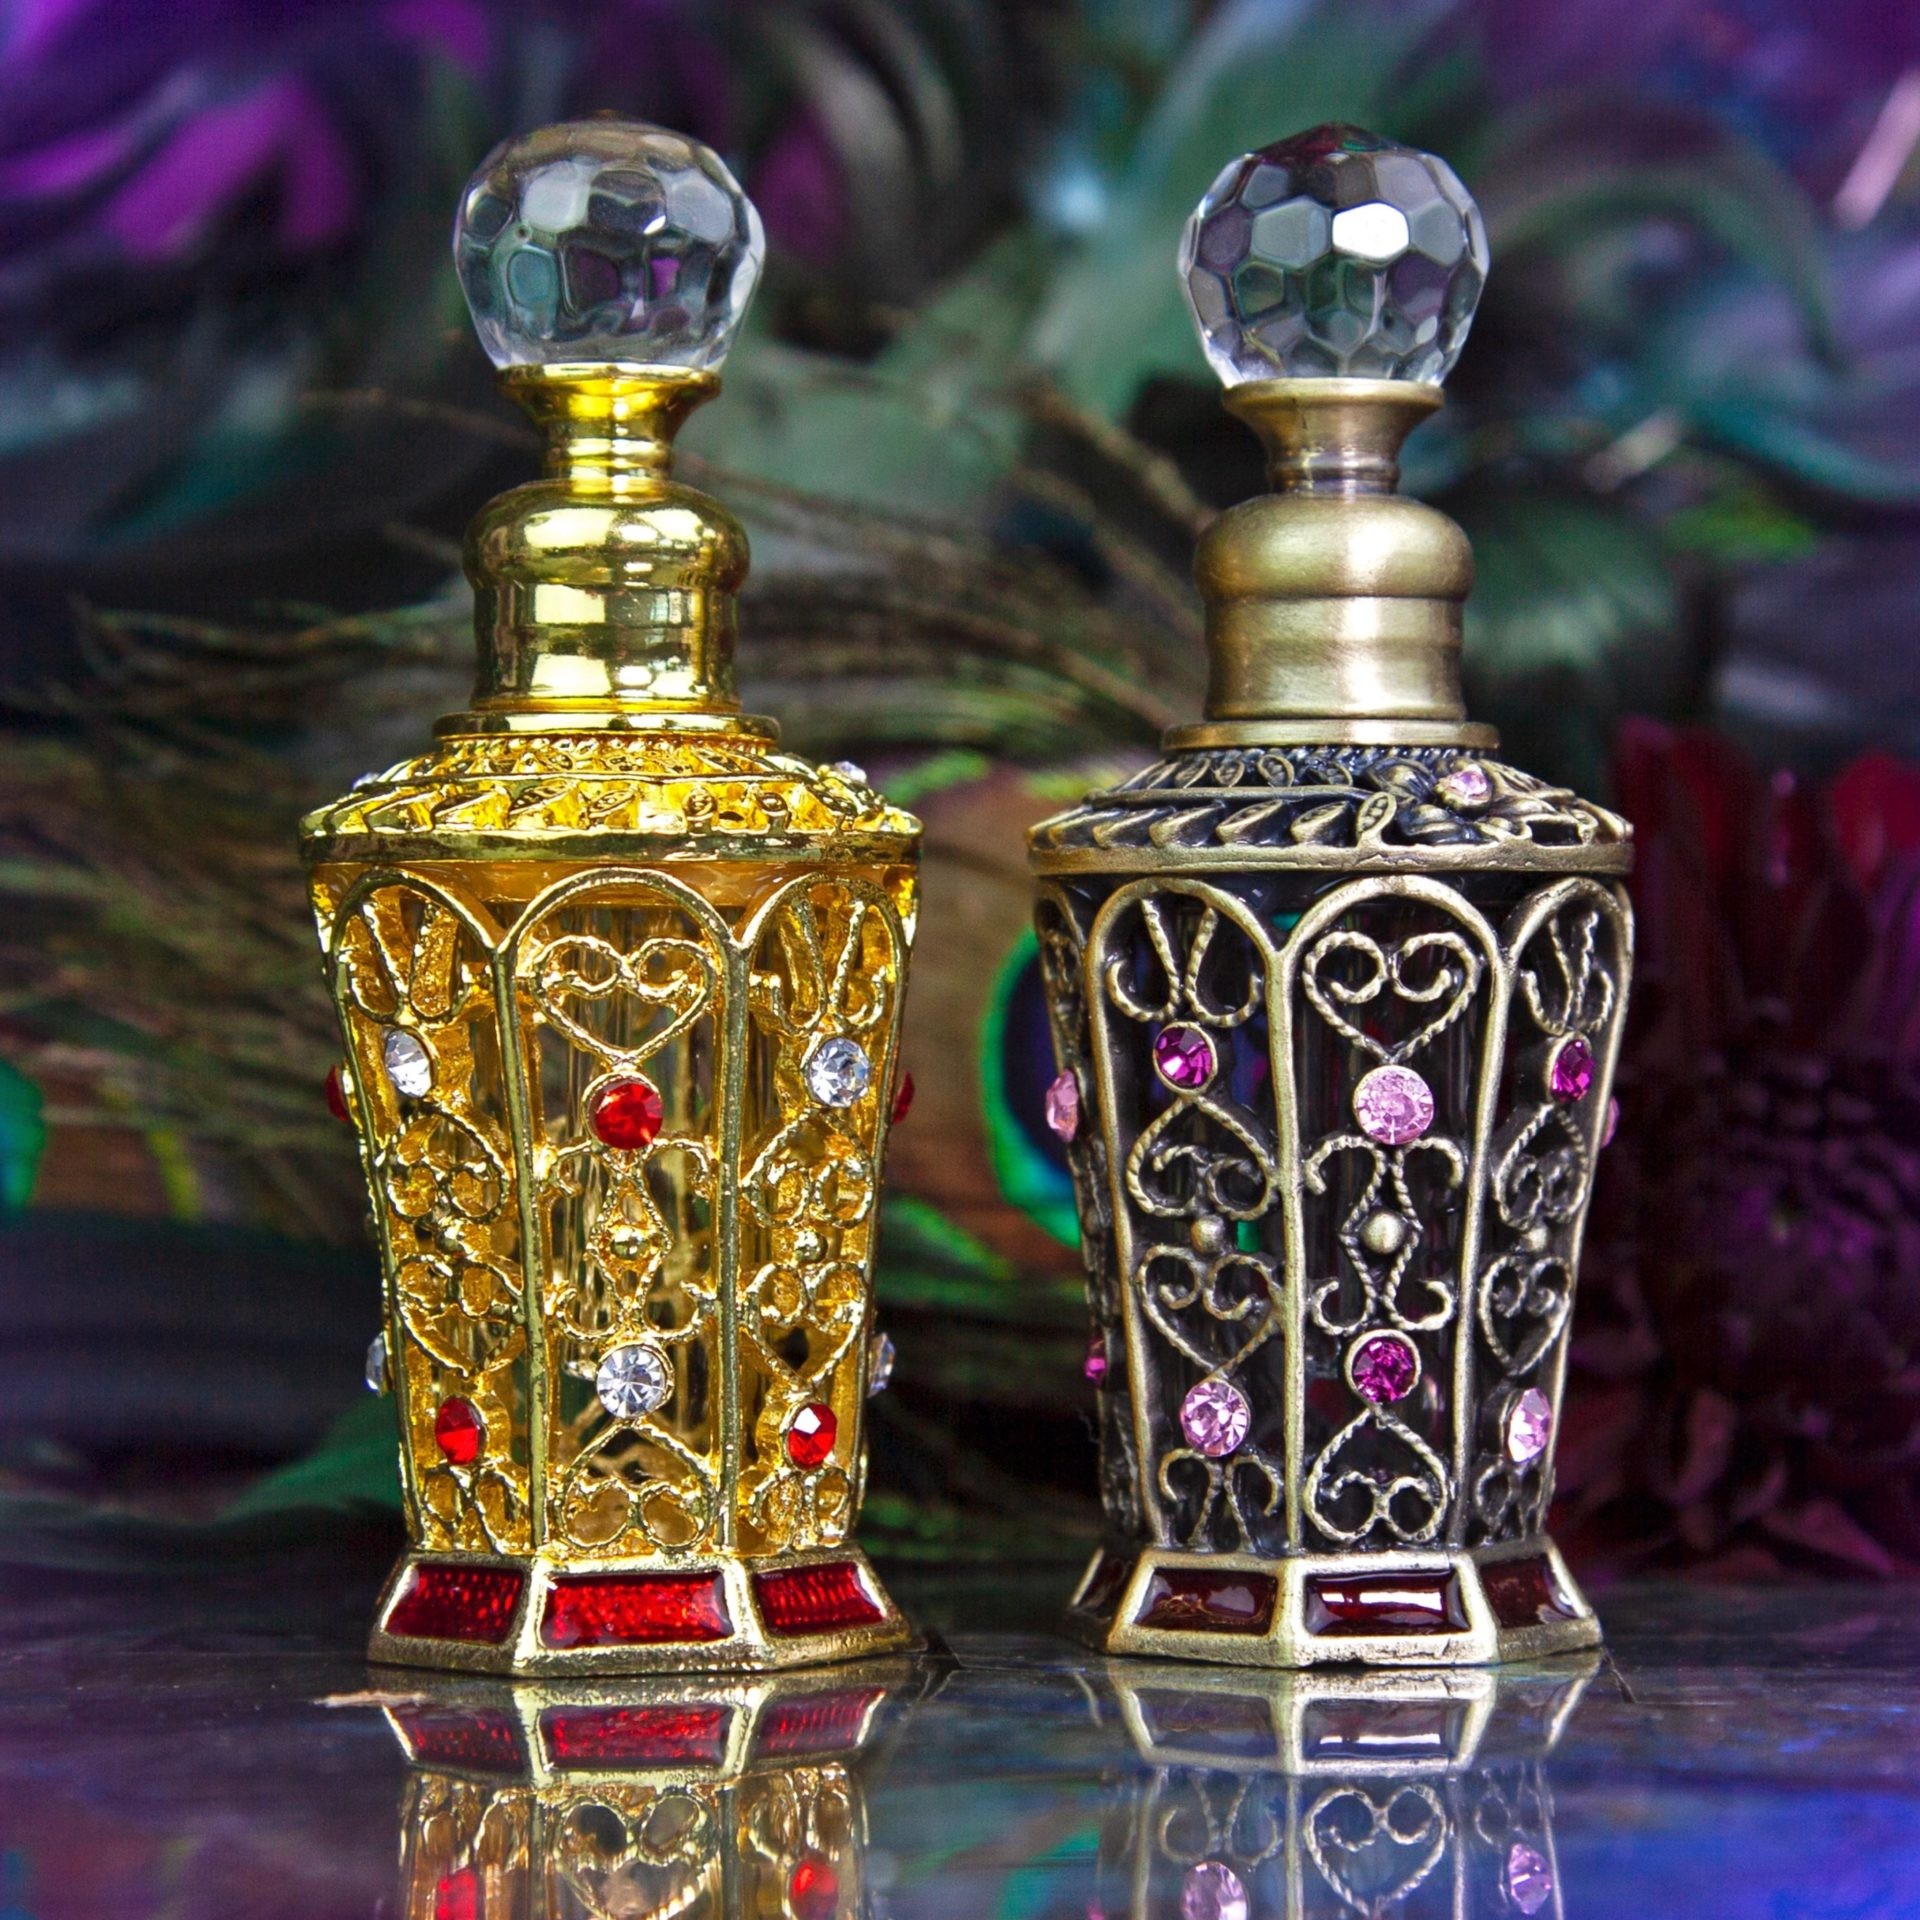 https://www.sagegoddess.com/wp-content/uploads/2020/06/Arabian_Perfume_Bottles_1of3_6_24.jpg.optimal.jpg